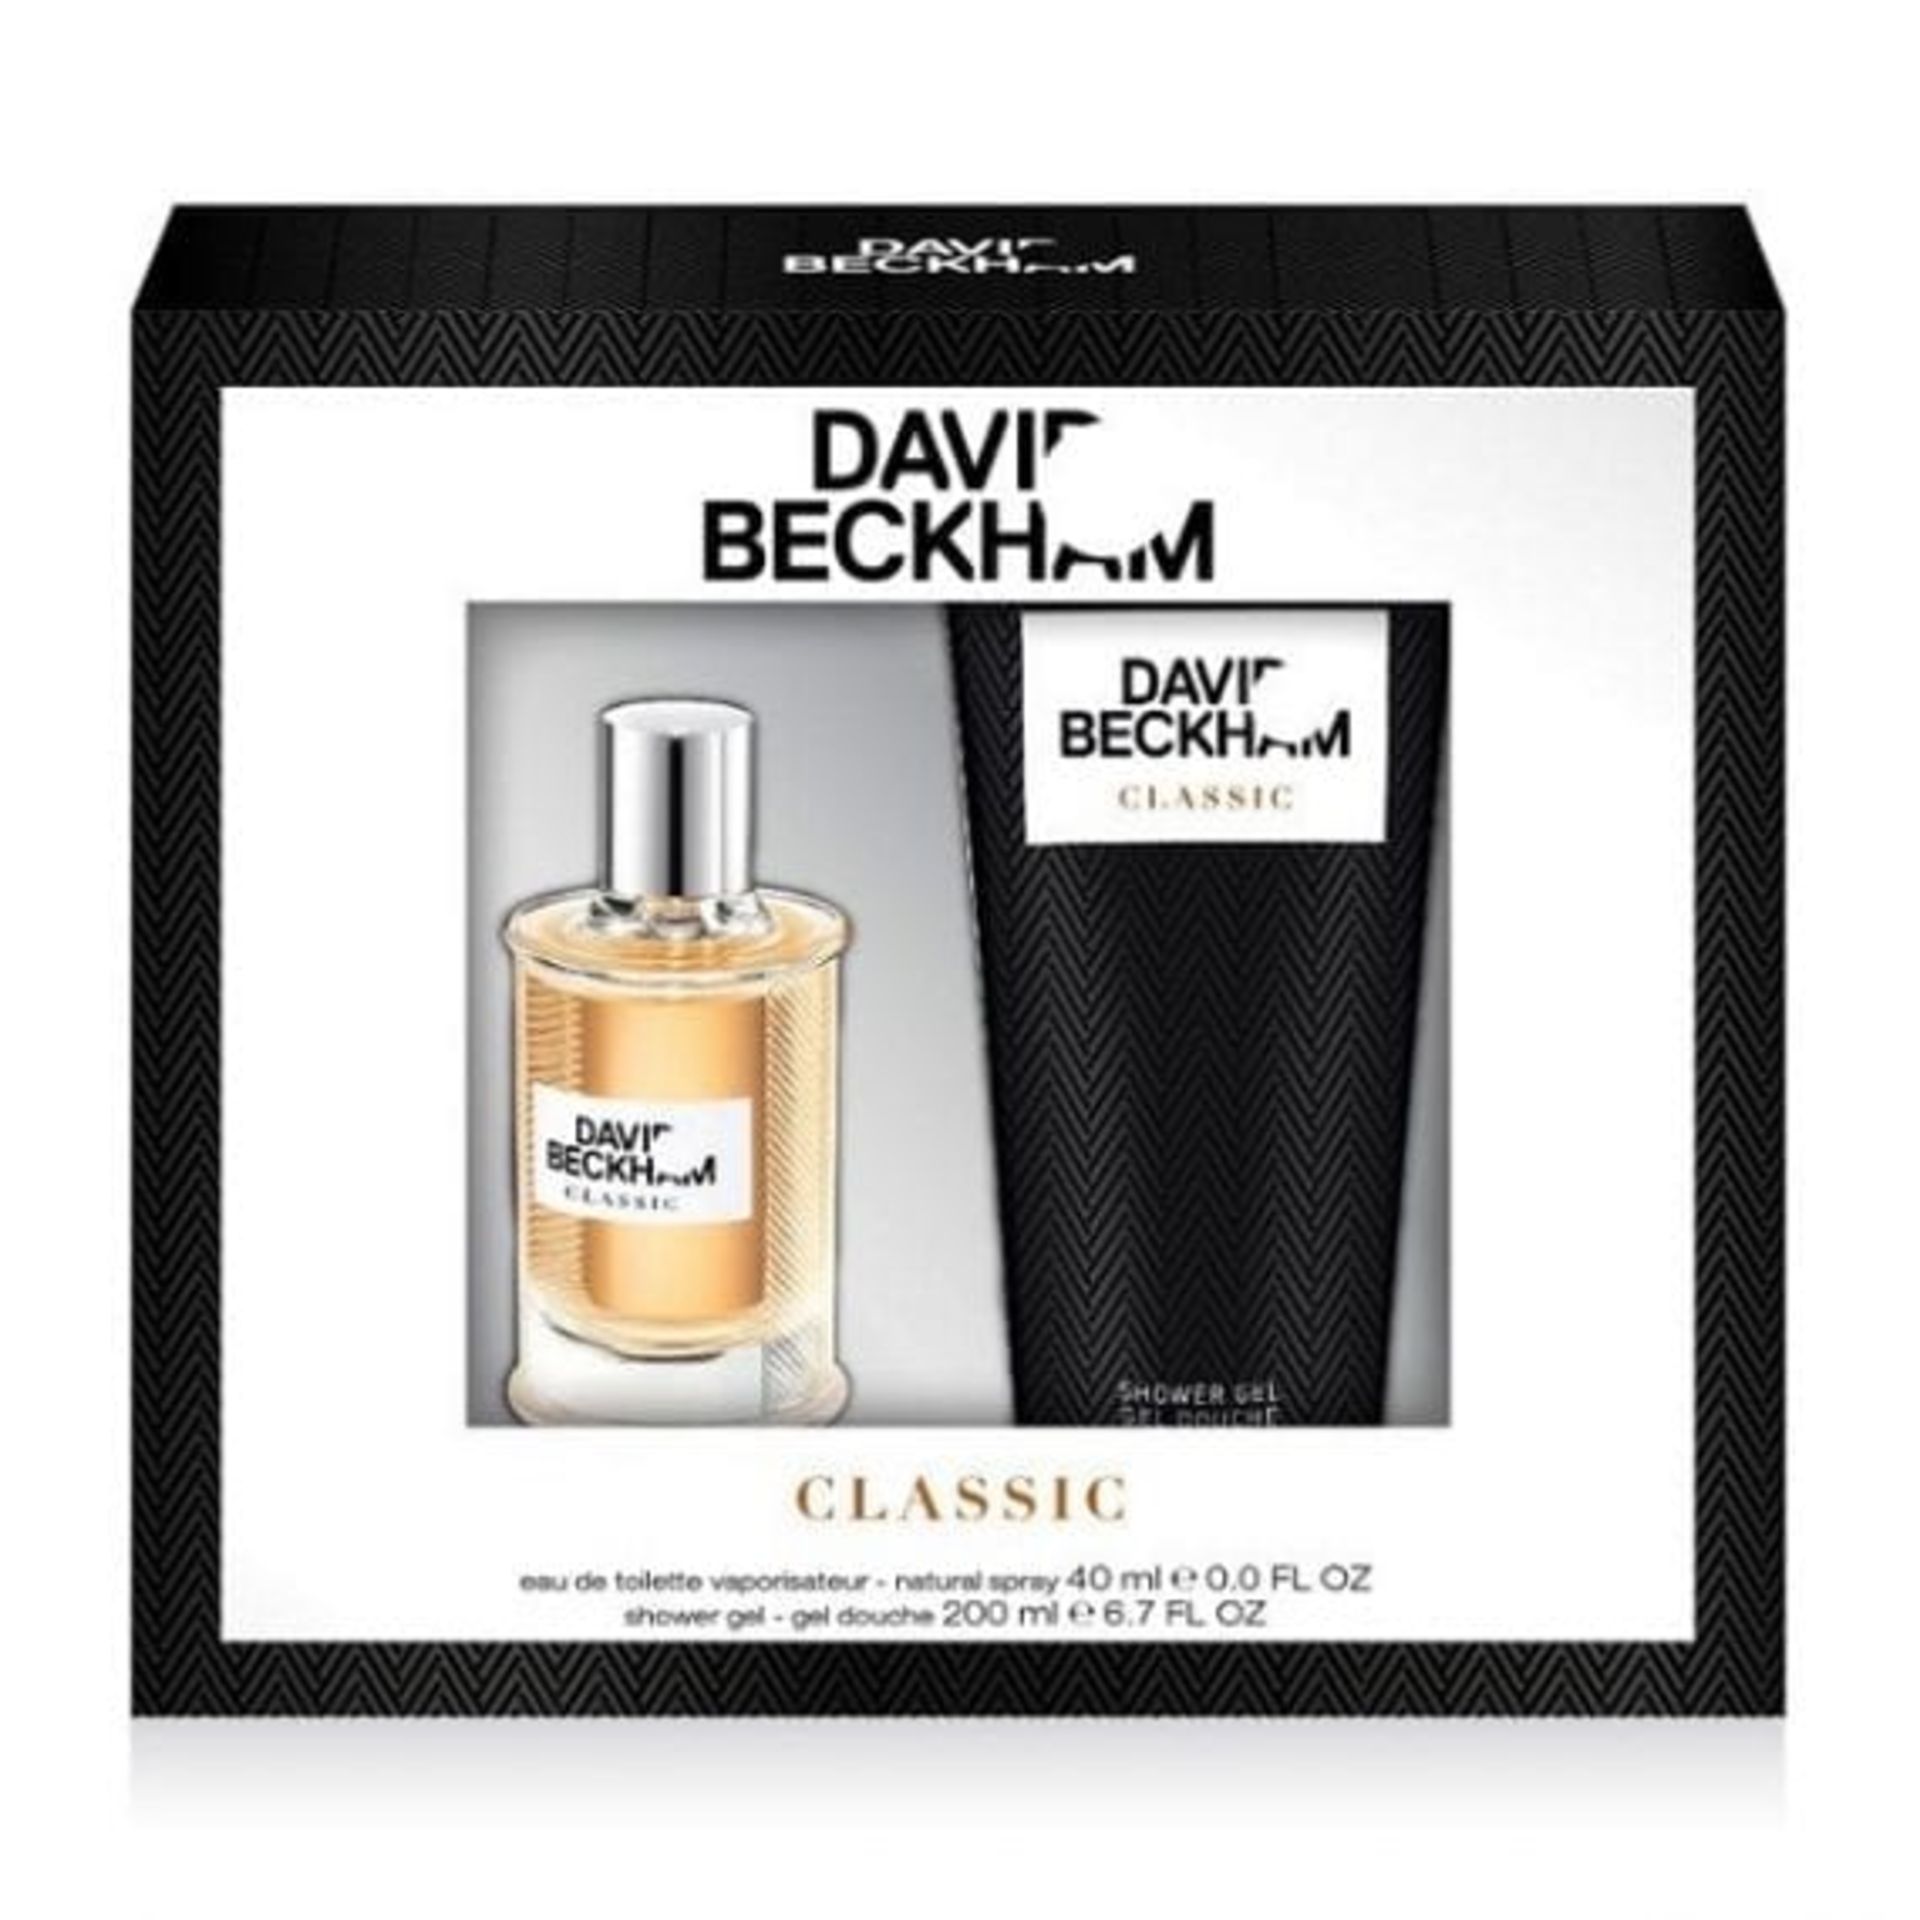 V Brand New David Beckham Classic Gift Set For Him - 40ml EDT Spray And 200ml Shower Gel